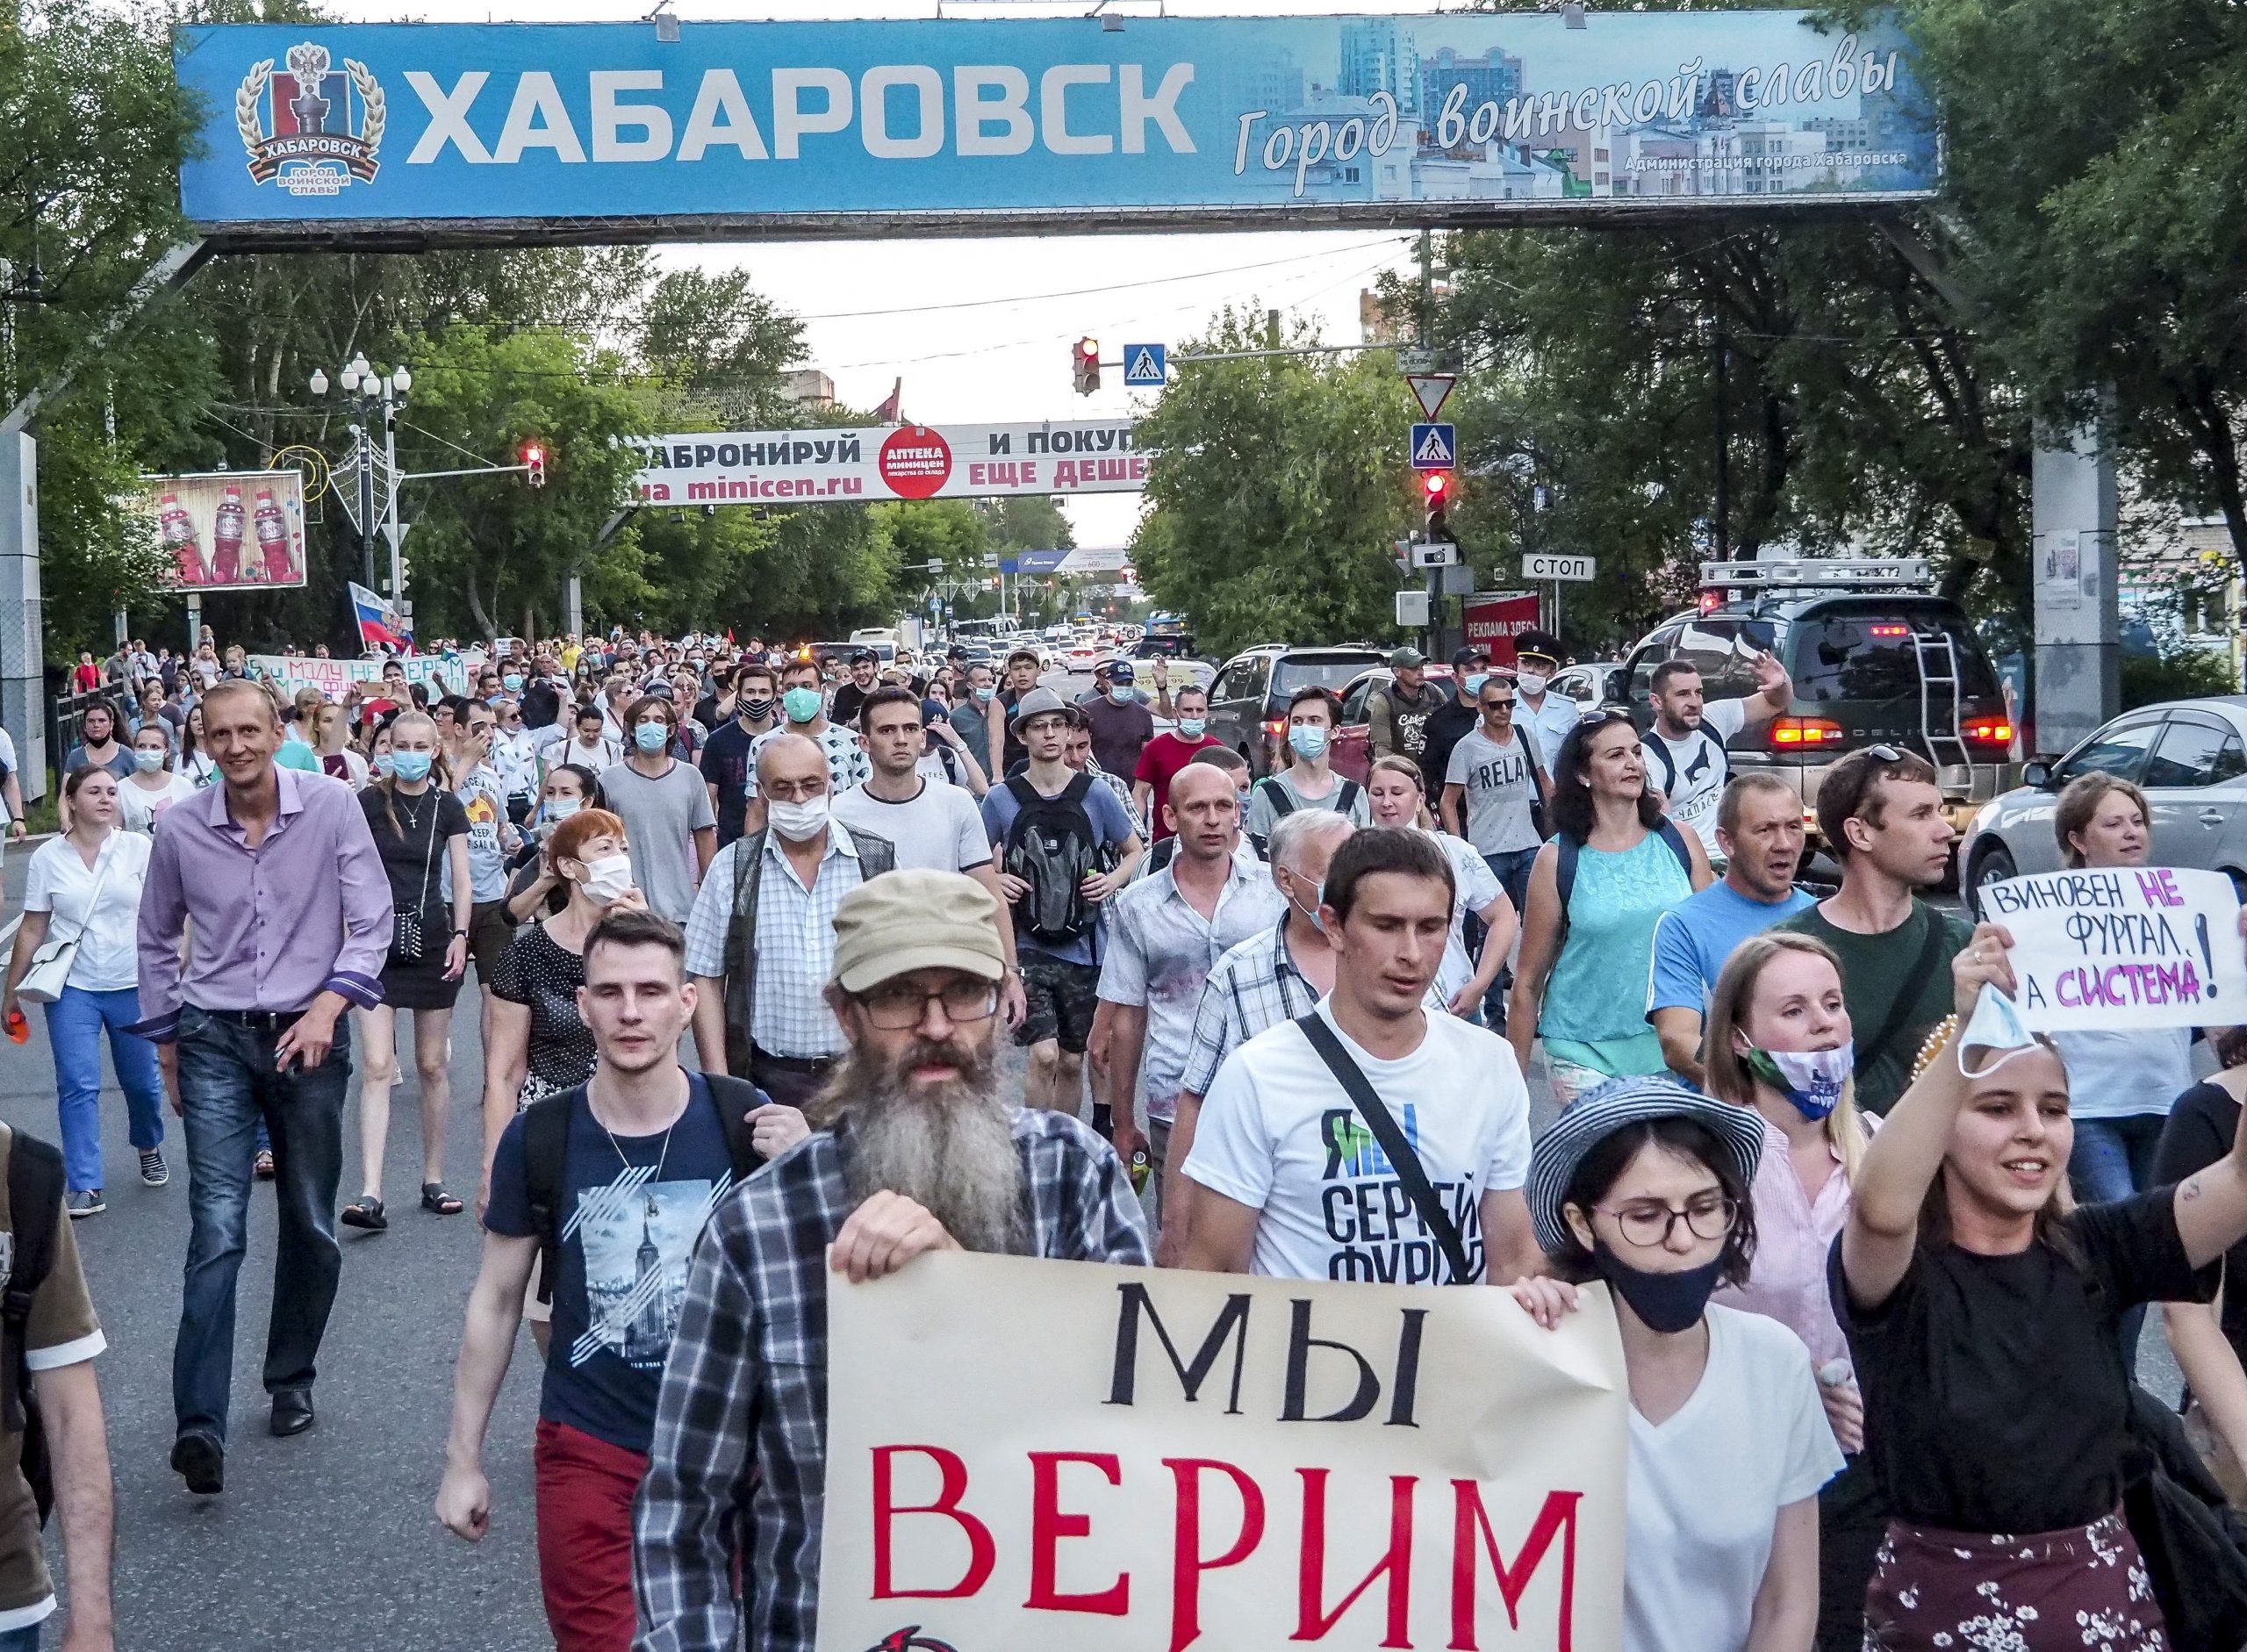 Protesti protiv Kremlja potresaju krajnji istok Rusije 1